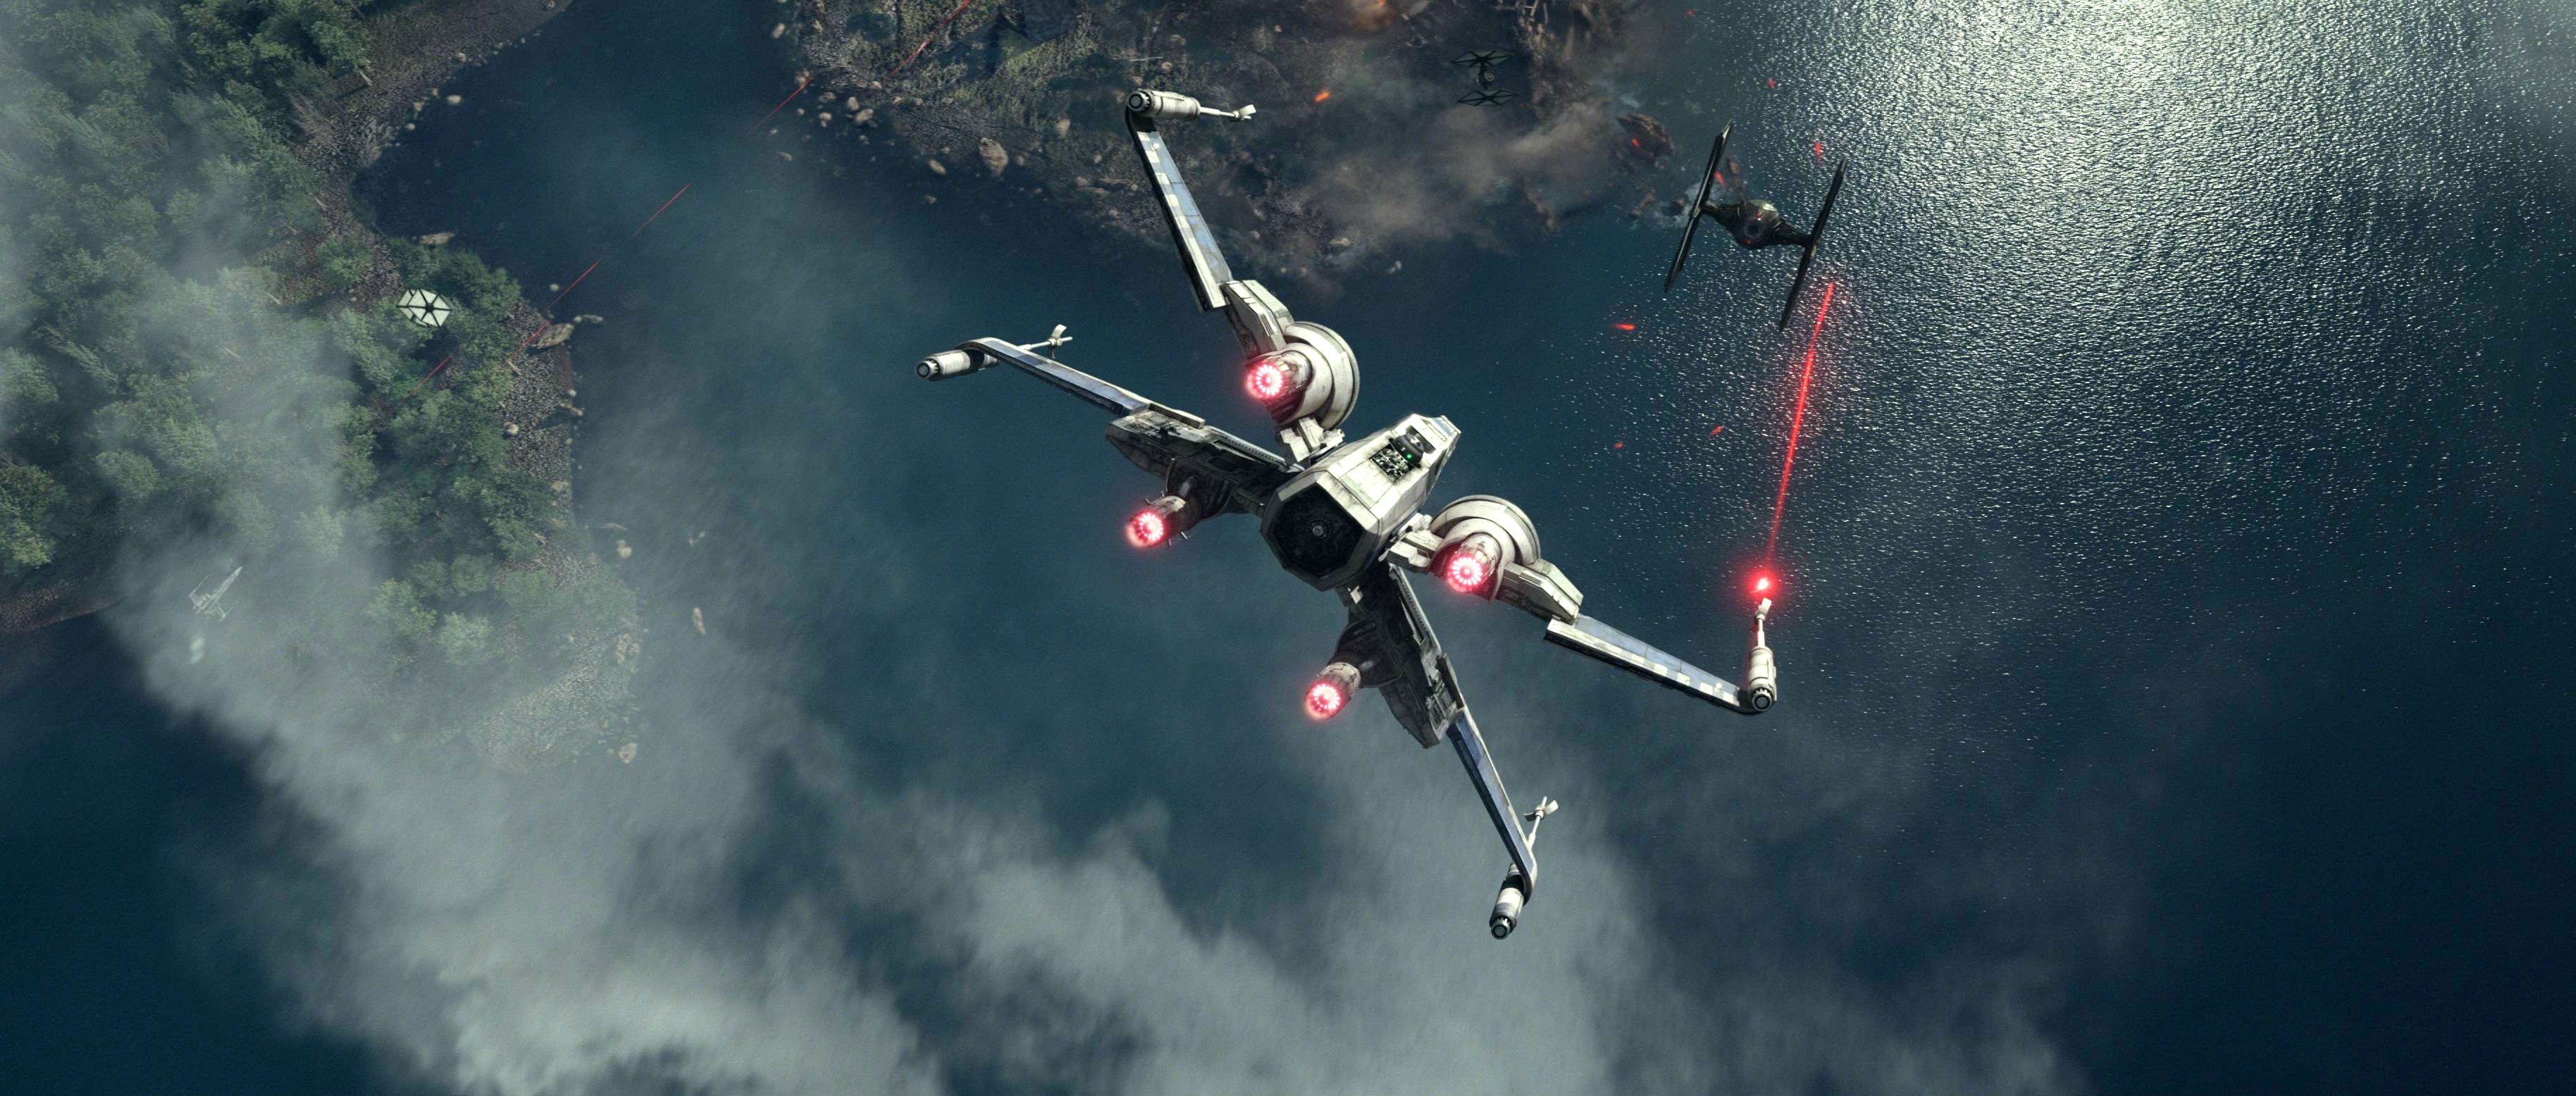 STAR WARS FORCE AWAKENS Sci Fi Futuristic Disney 1star Wars Force Awakens Action Adventure Spaceship Battle Wallpaperx1556